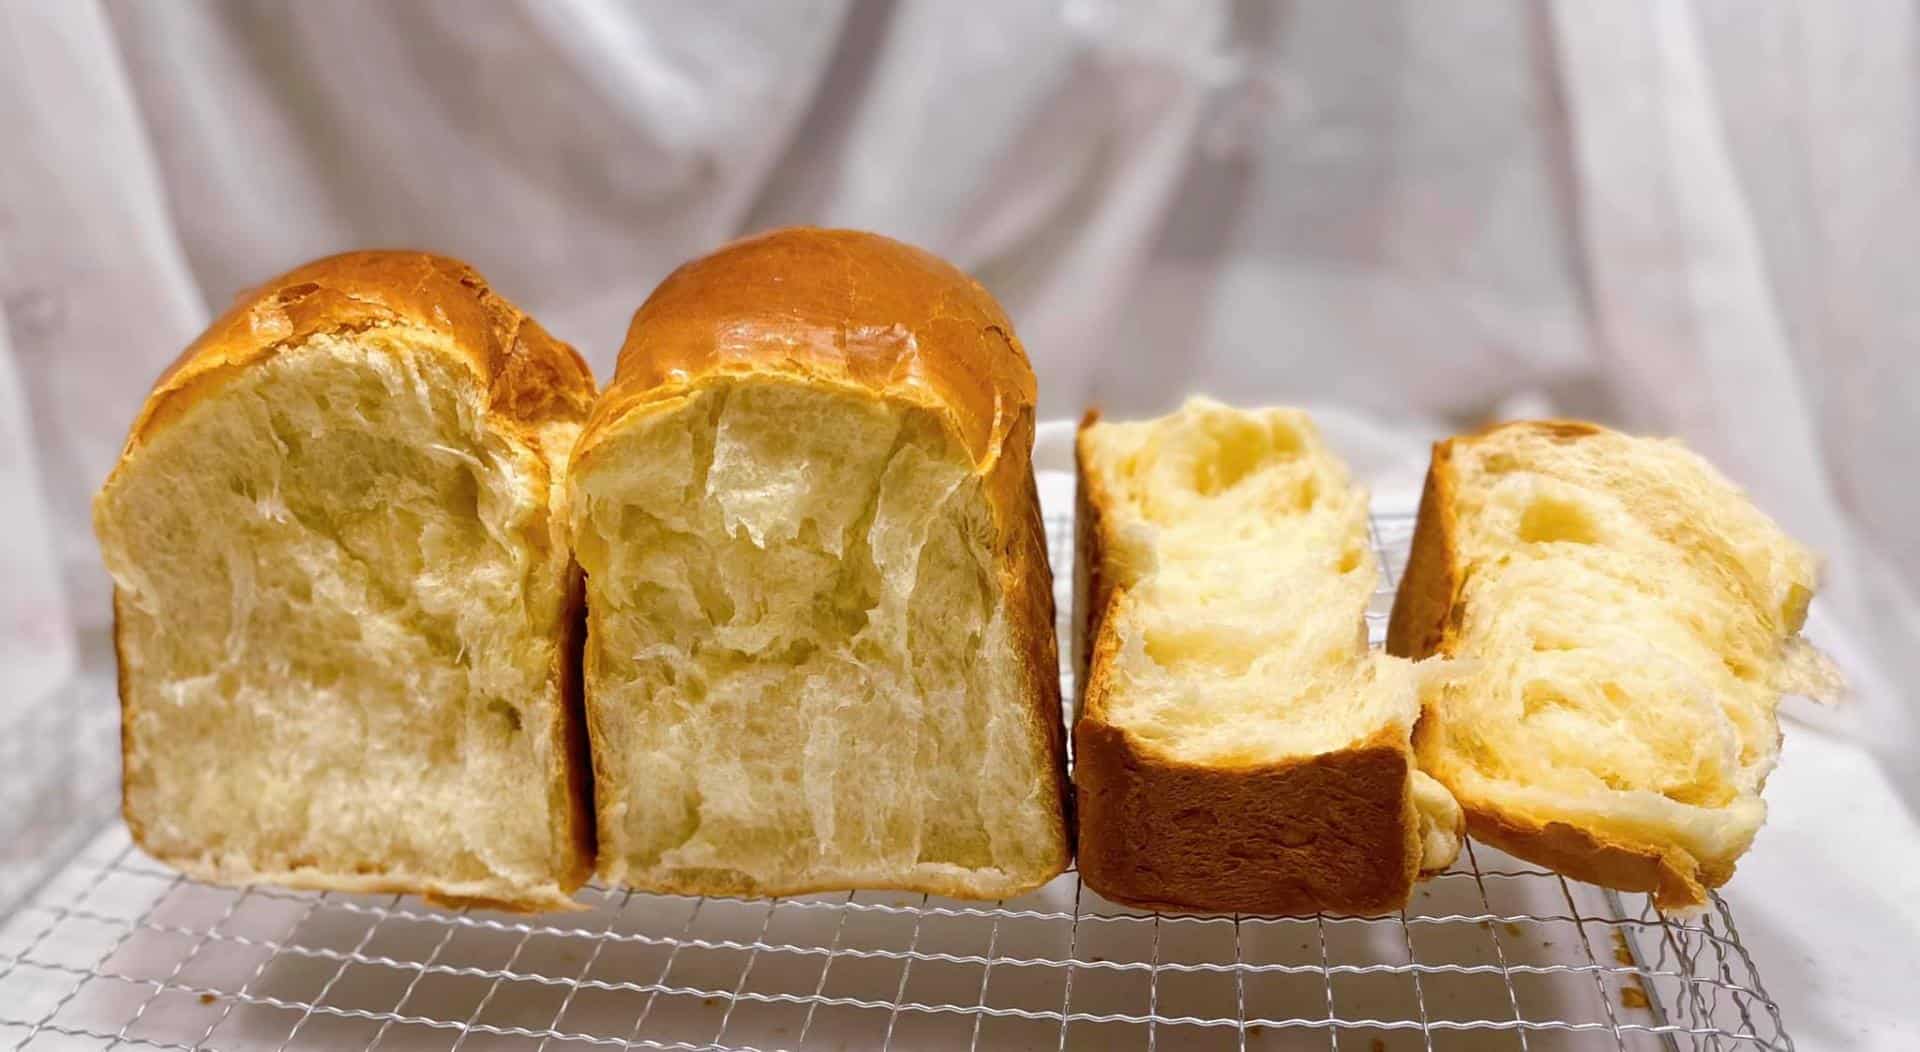 Cách bảo quản bánh mì sandwich để được lâu mà vẫn mềm ngon như mới